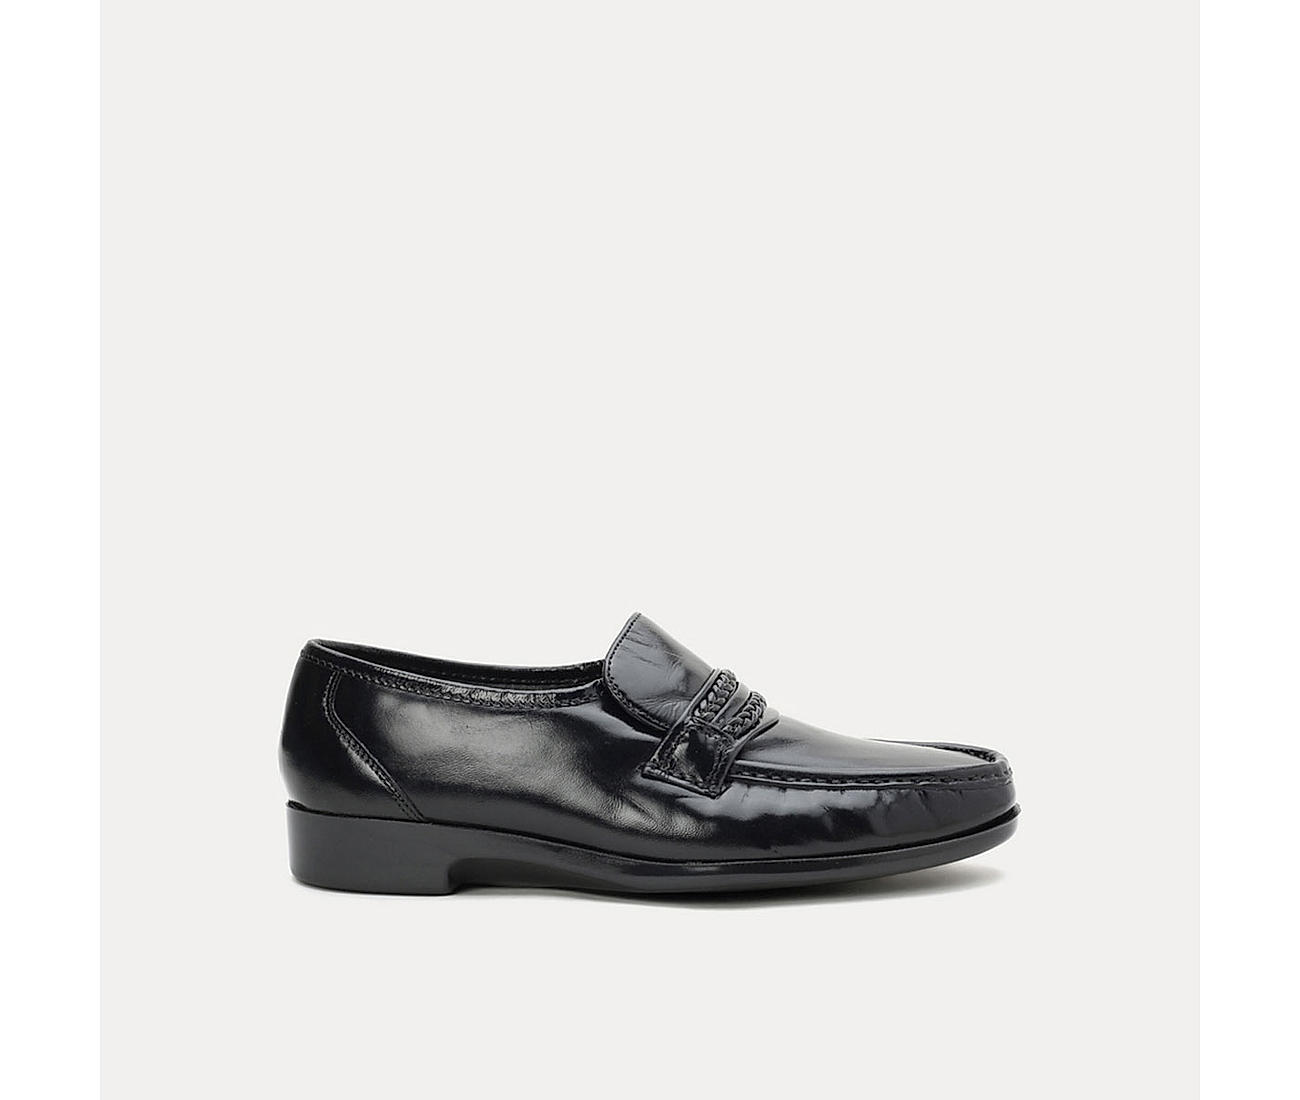 Buy Florsheim Black Men Work Classic Shoes Online at Regal Shoes |897394